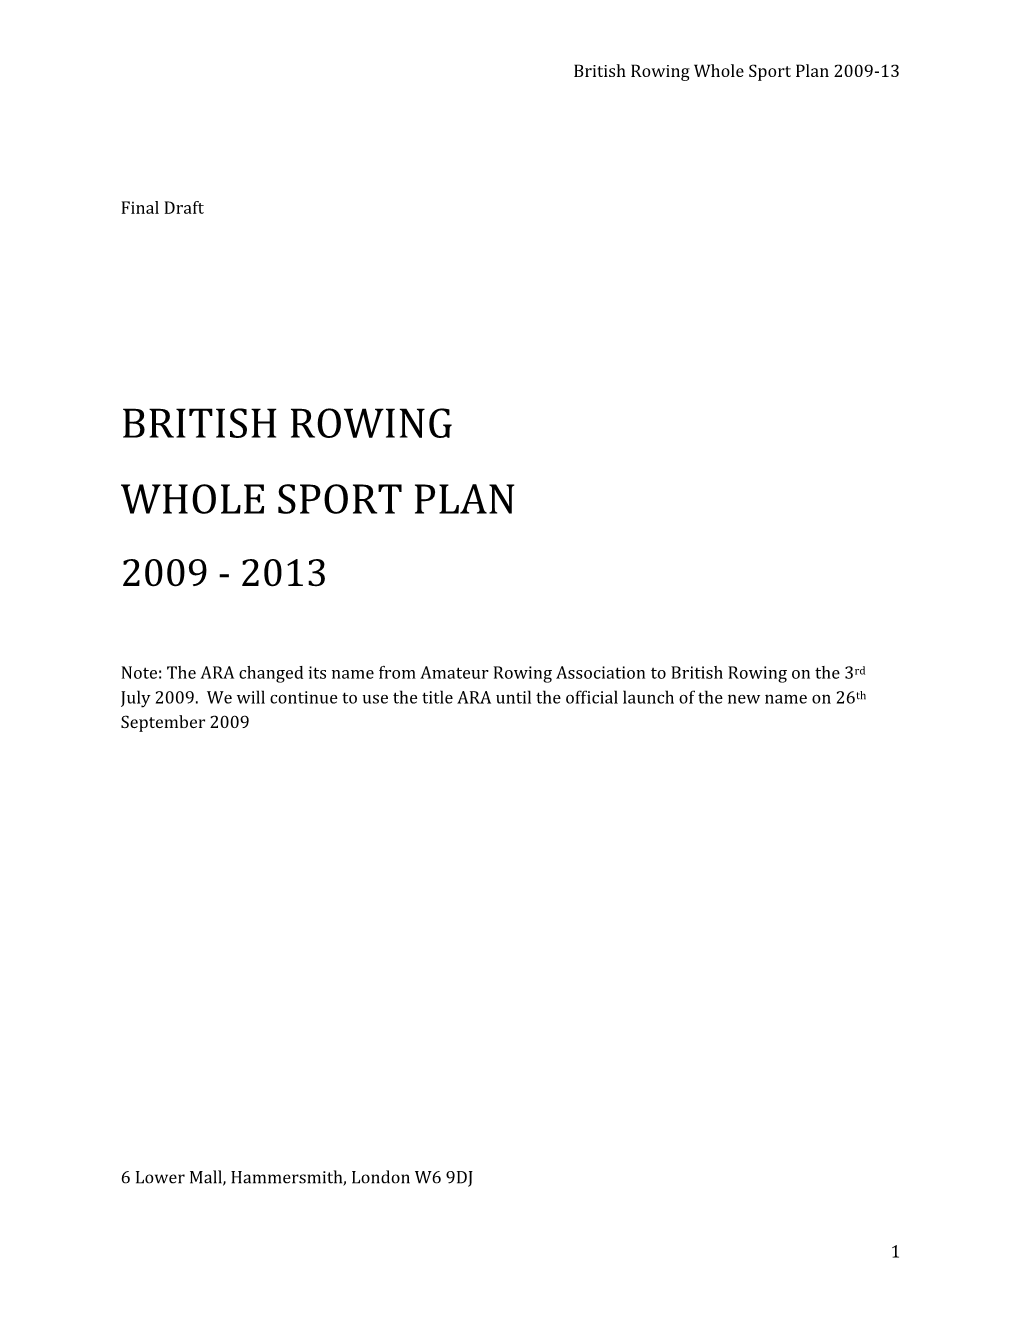 British Rowing Rt Plan Whole